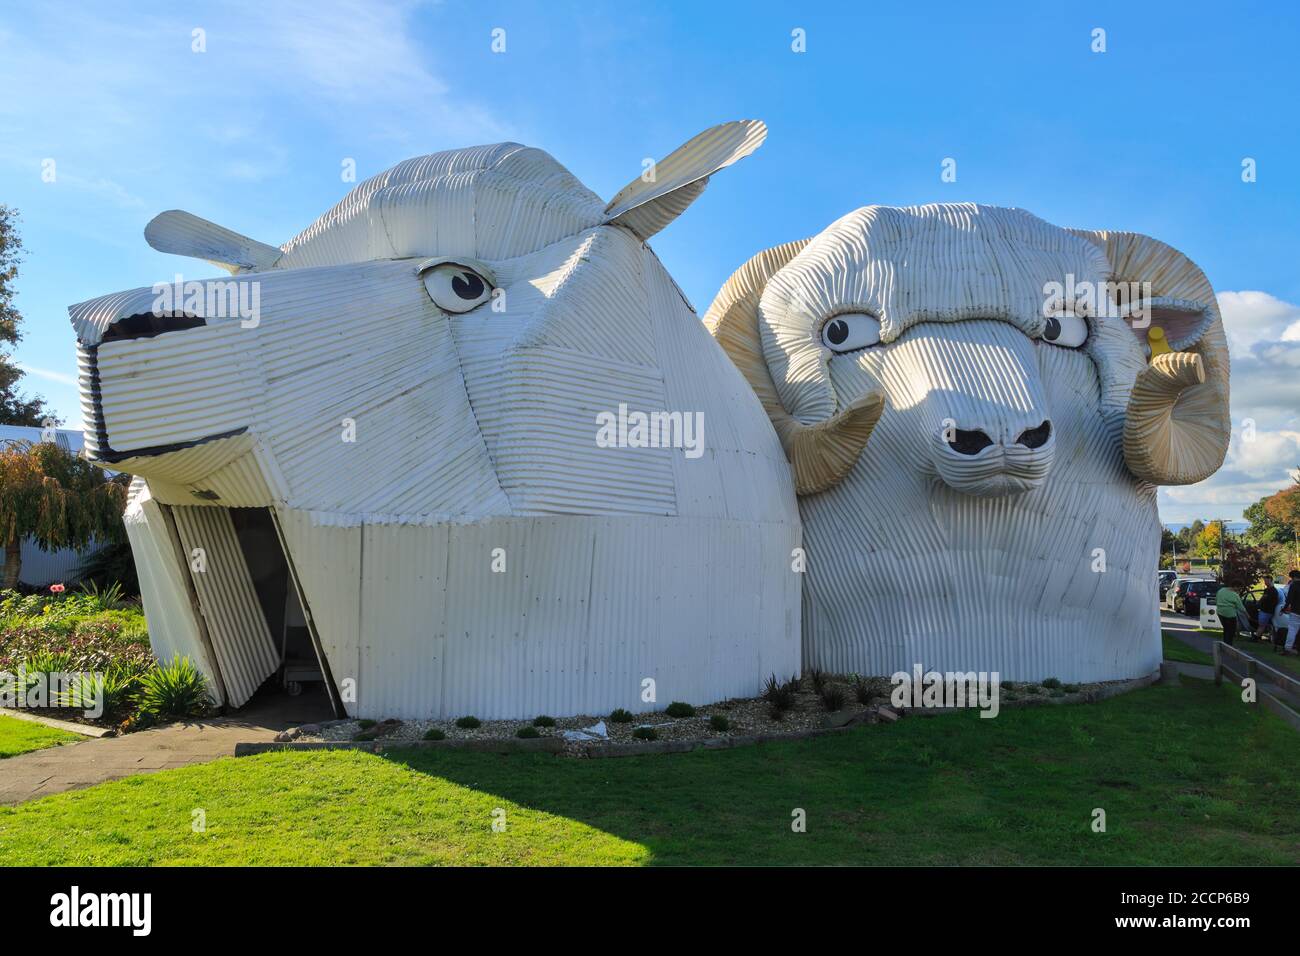 Gigantesche sculture di pecora e ariete di ferro corrugato a Tirau, Nuova Zelanda. All'interno c'è un negozio che vende abiti in lana merino. 5 maggio 2019 Foto Stock